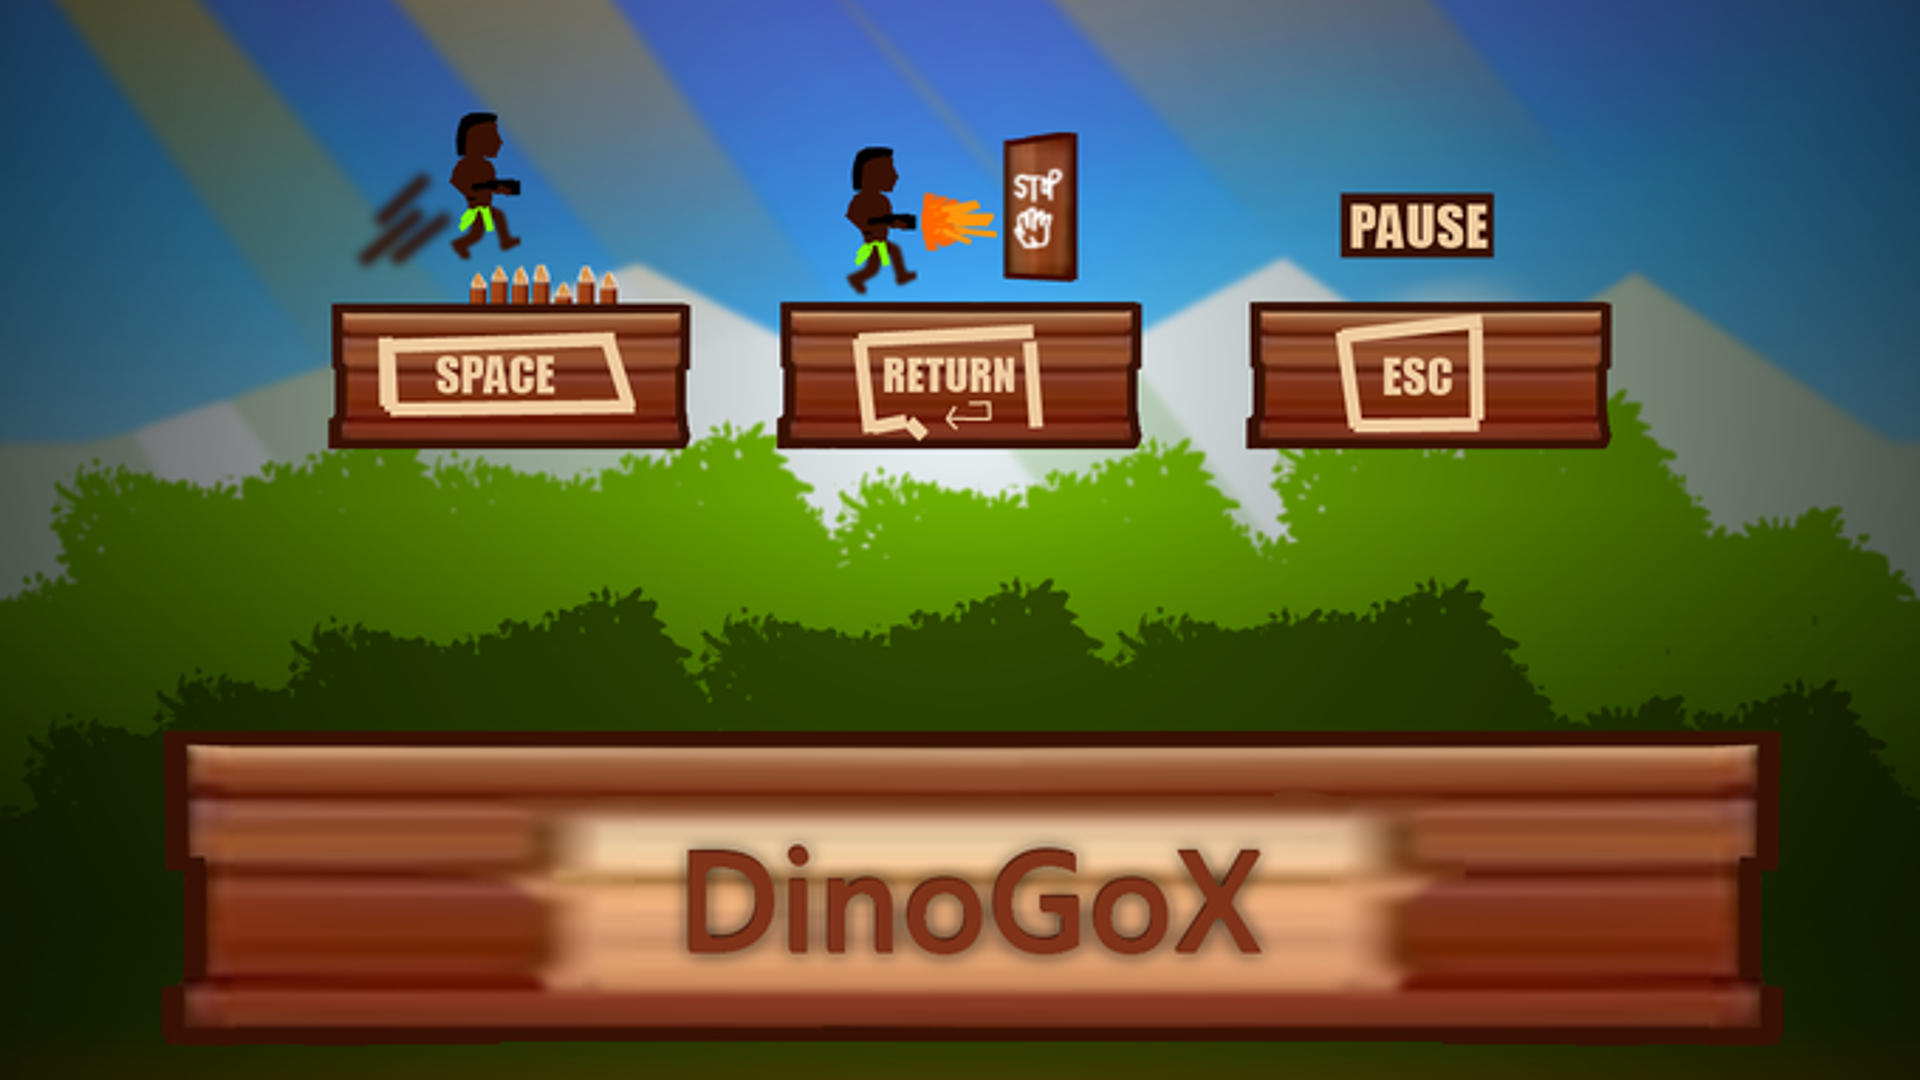 Project DinoGoX